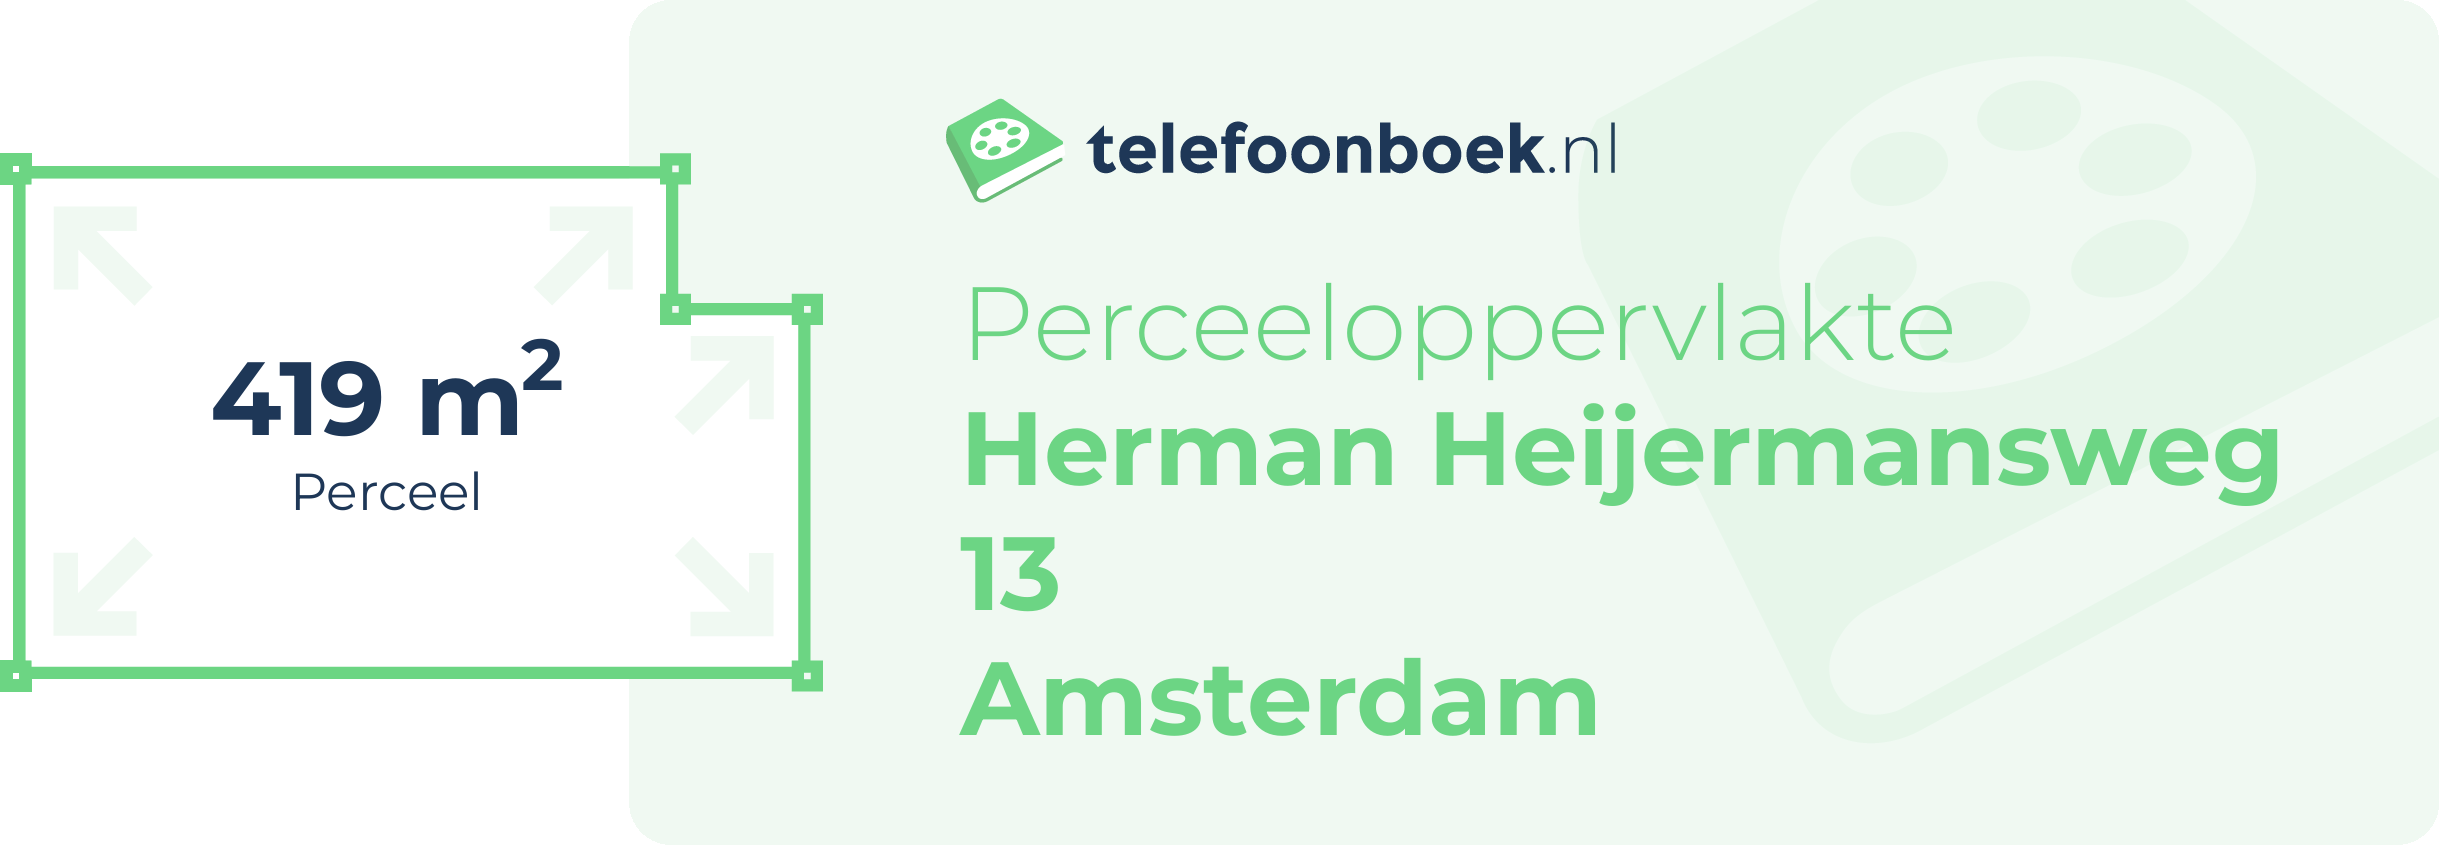 Perceeloppervlakte Herman Heijermansweg 13 Amsterdam